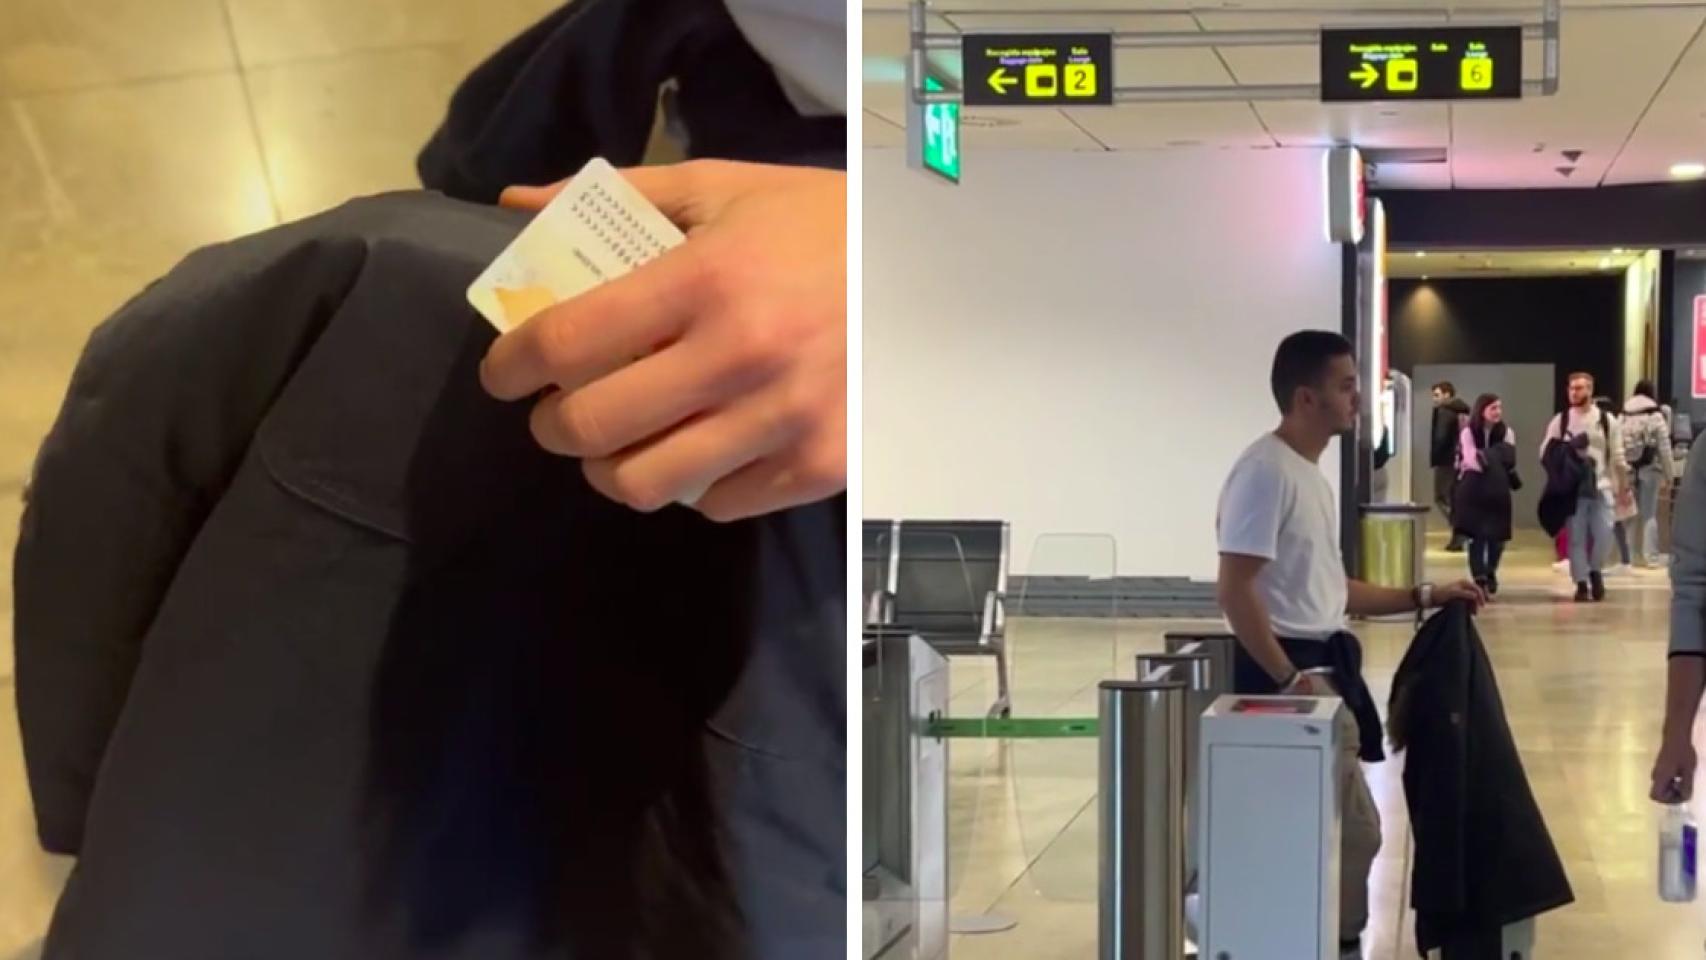 La mochila viral para no pagar por el equipaje de mano en el avión